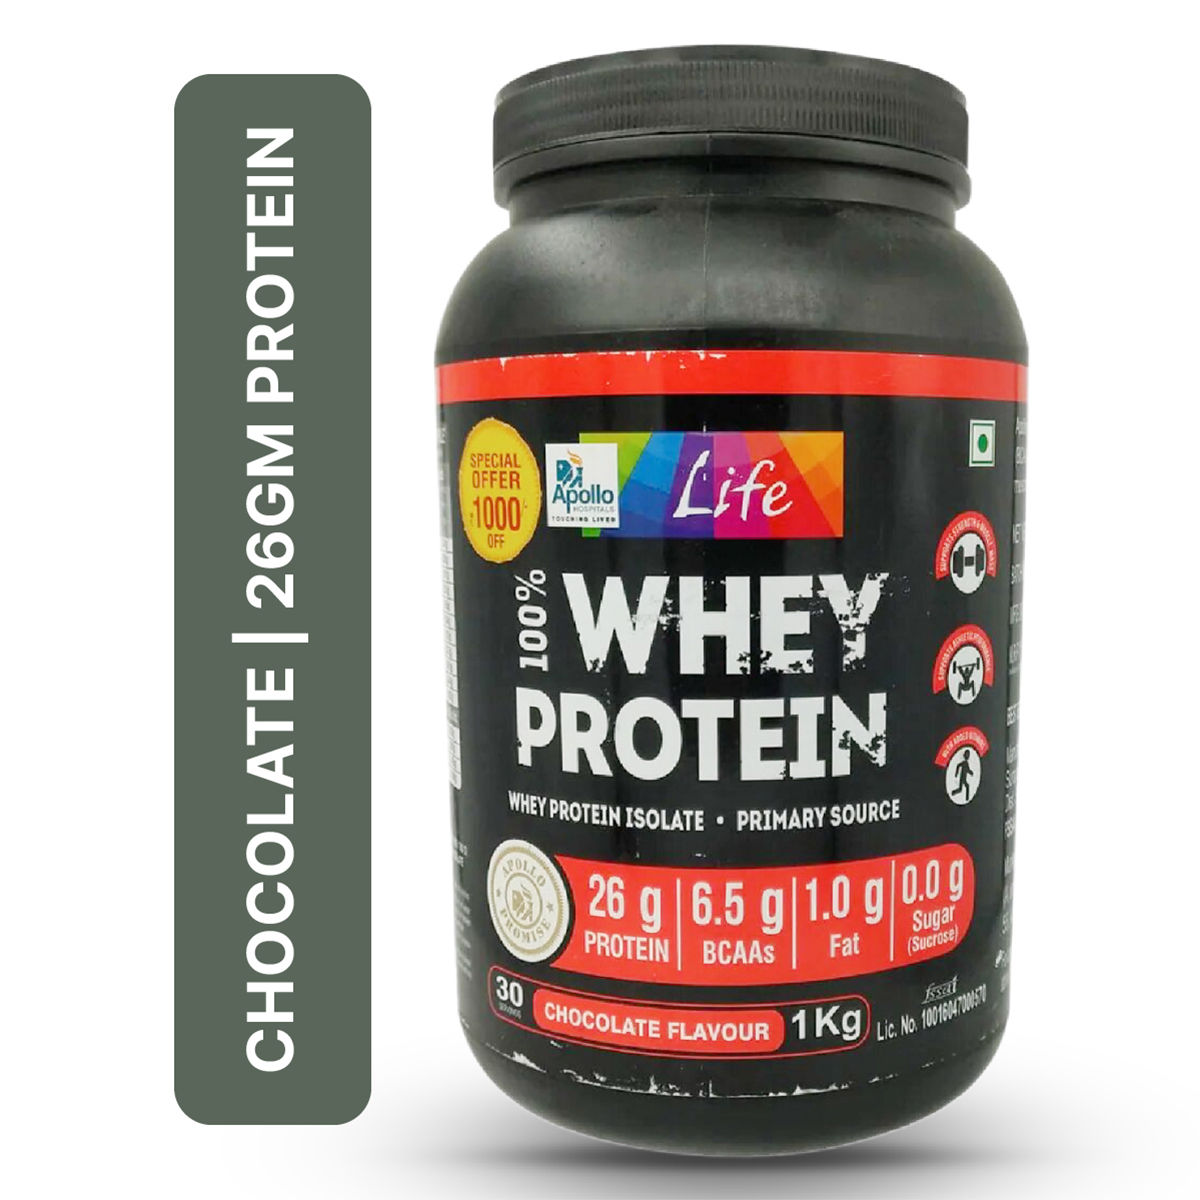 Buy Apollo Life Whey Protein Chocolate Flavour Powder, 1 Kg Online